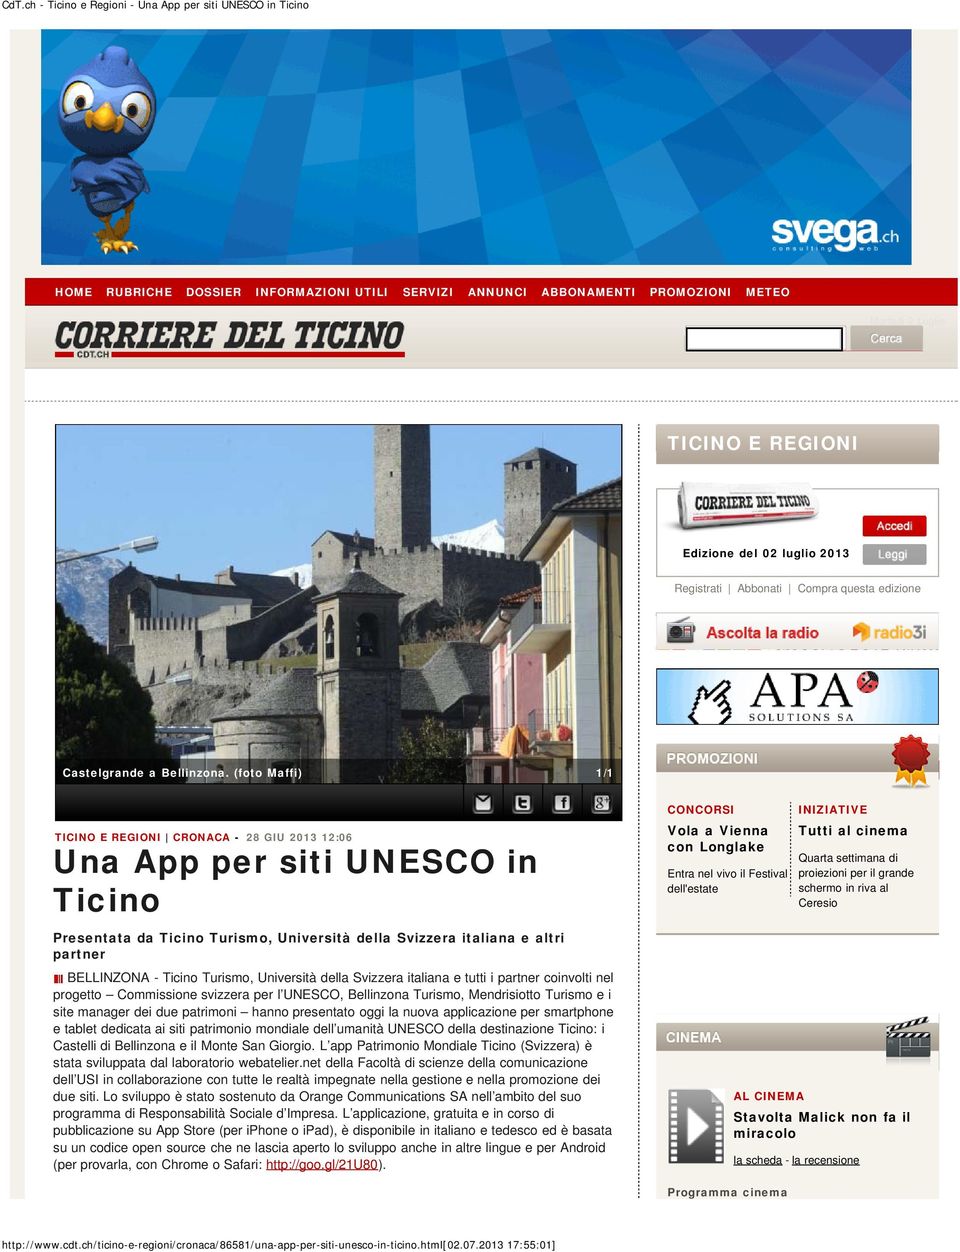 (foto Maffi) 1/1 TICINO E REGIONI CRONACA - 28 GIU 2013 12:06 Una App per siti UNESCO in Presentata da Turismo, Università della Svizzera italiana e altri partner BELLINZONA - Turismo, Università